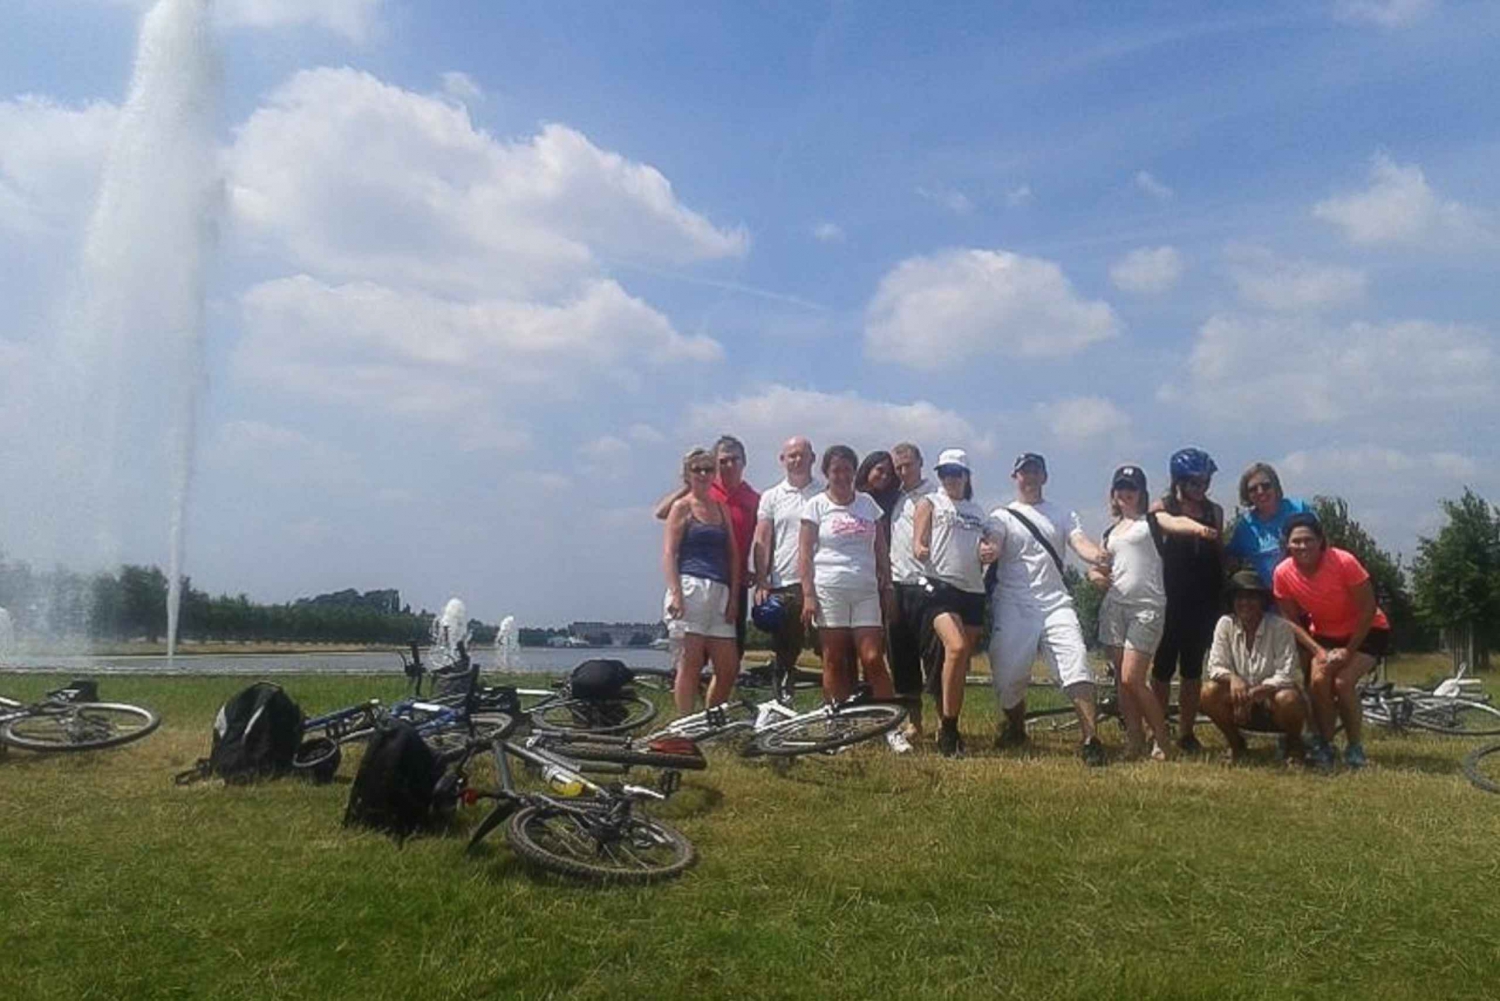 Palacio de Hampton Court: Recorrido en bicicleta por el río Támesis